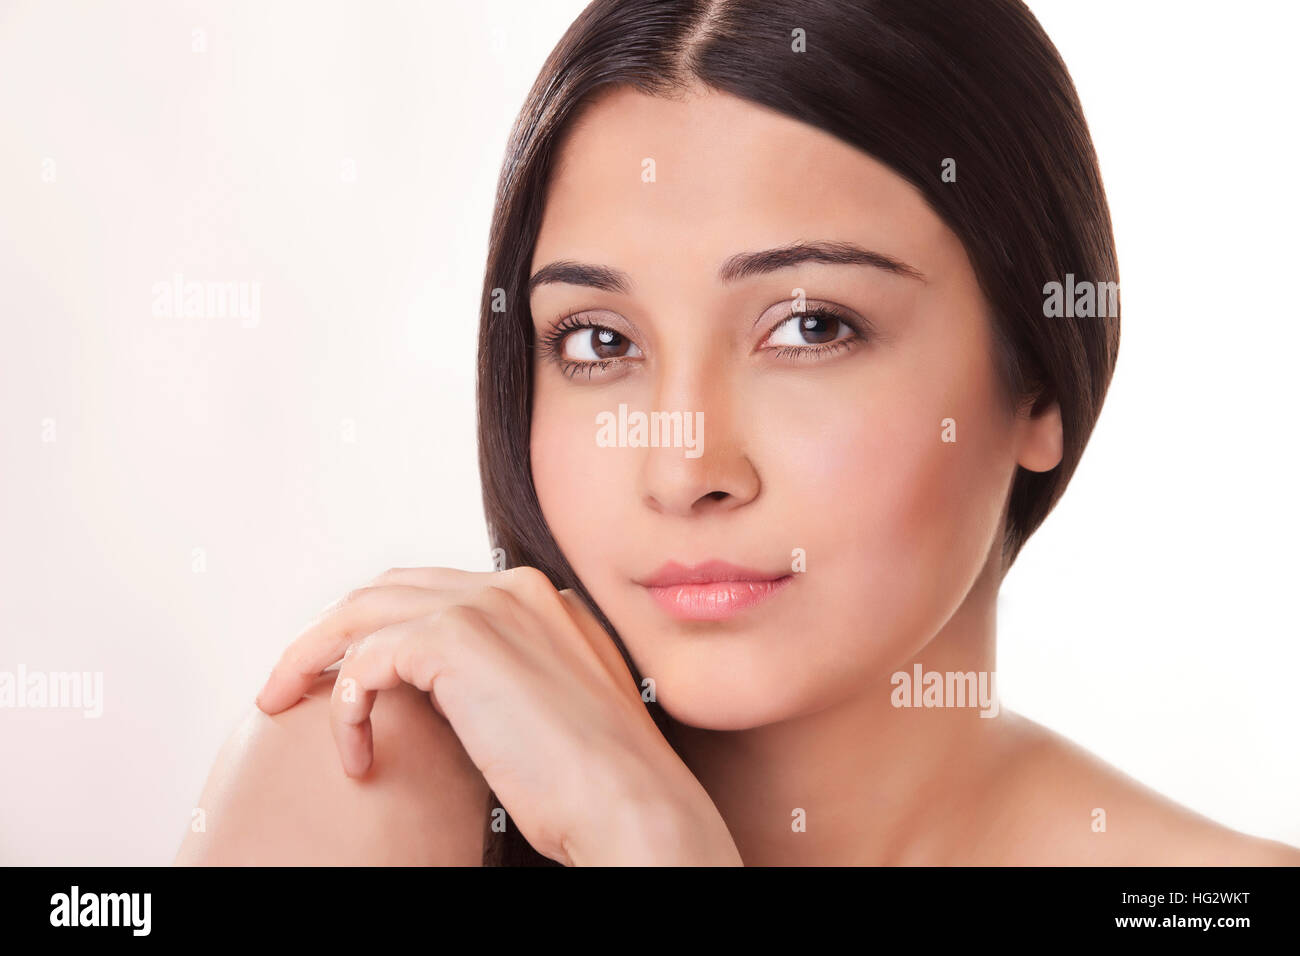 Porträt der schönen jungen Frau Stockfoto